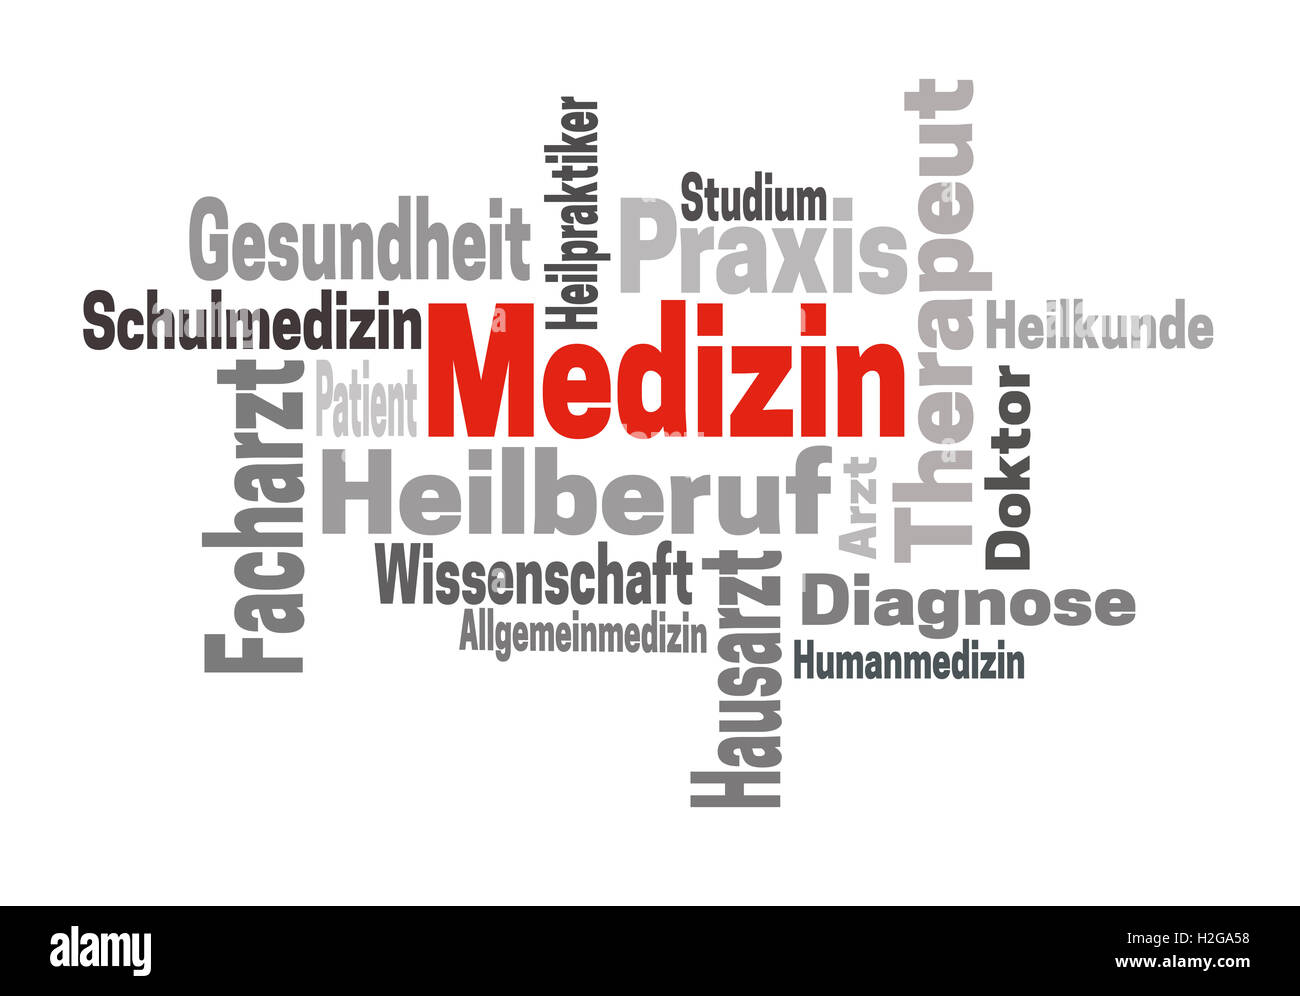 Medizin Arzt Wissenschaft (in german Medicine doctor Science) word cloud concept. Stock Photo